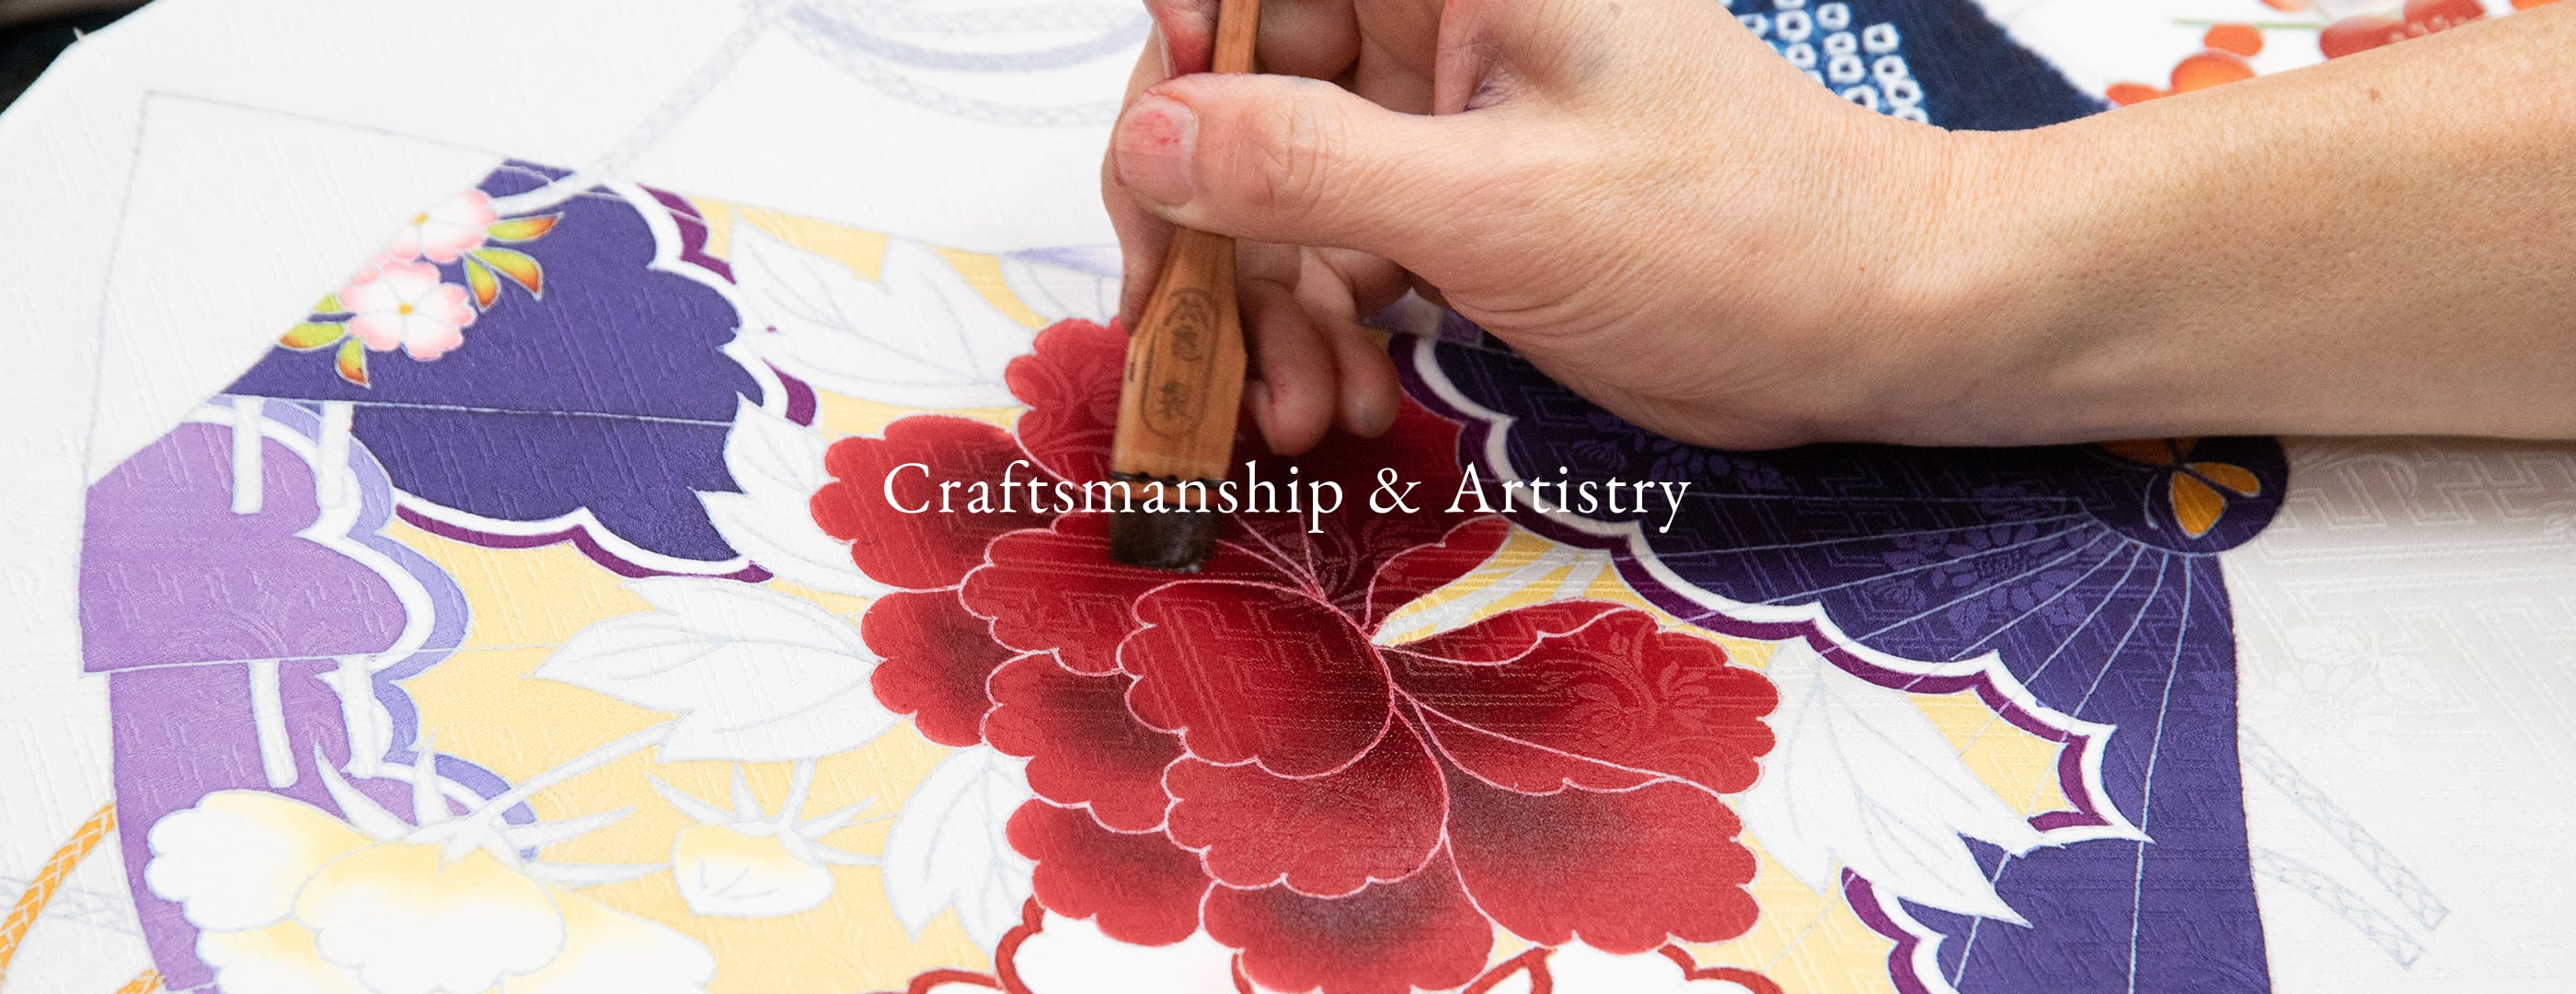 Craftmanship & Artistry